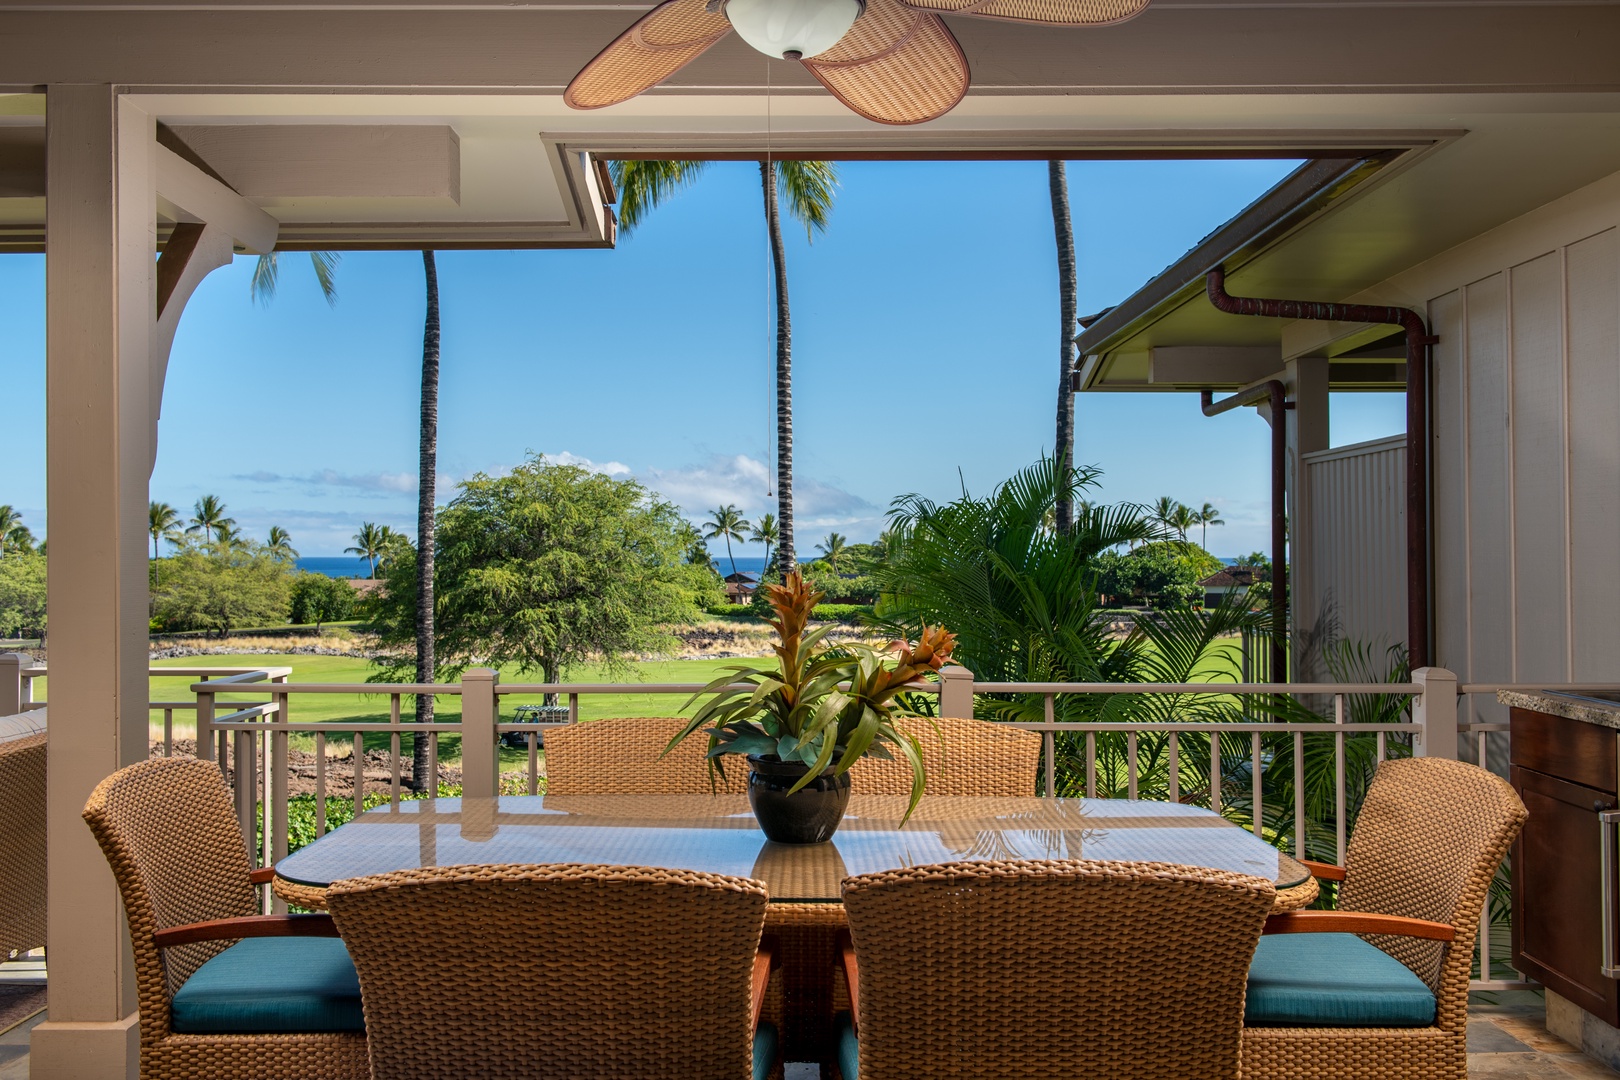 Kailua Kona Vacation Rentals, 3BD Ka'Ulu Villa (109A) at Four Seasons Resort at Hualalai - Enjoy an alfresco meal while taking in the lush greenery and ocean views from the lanai.